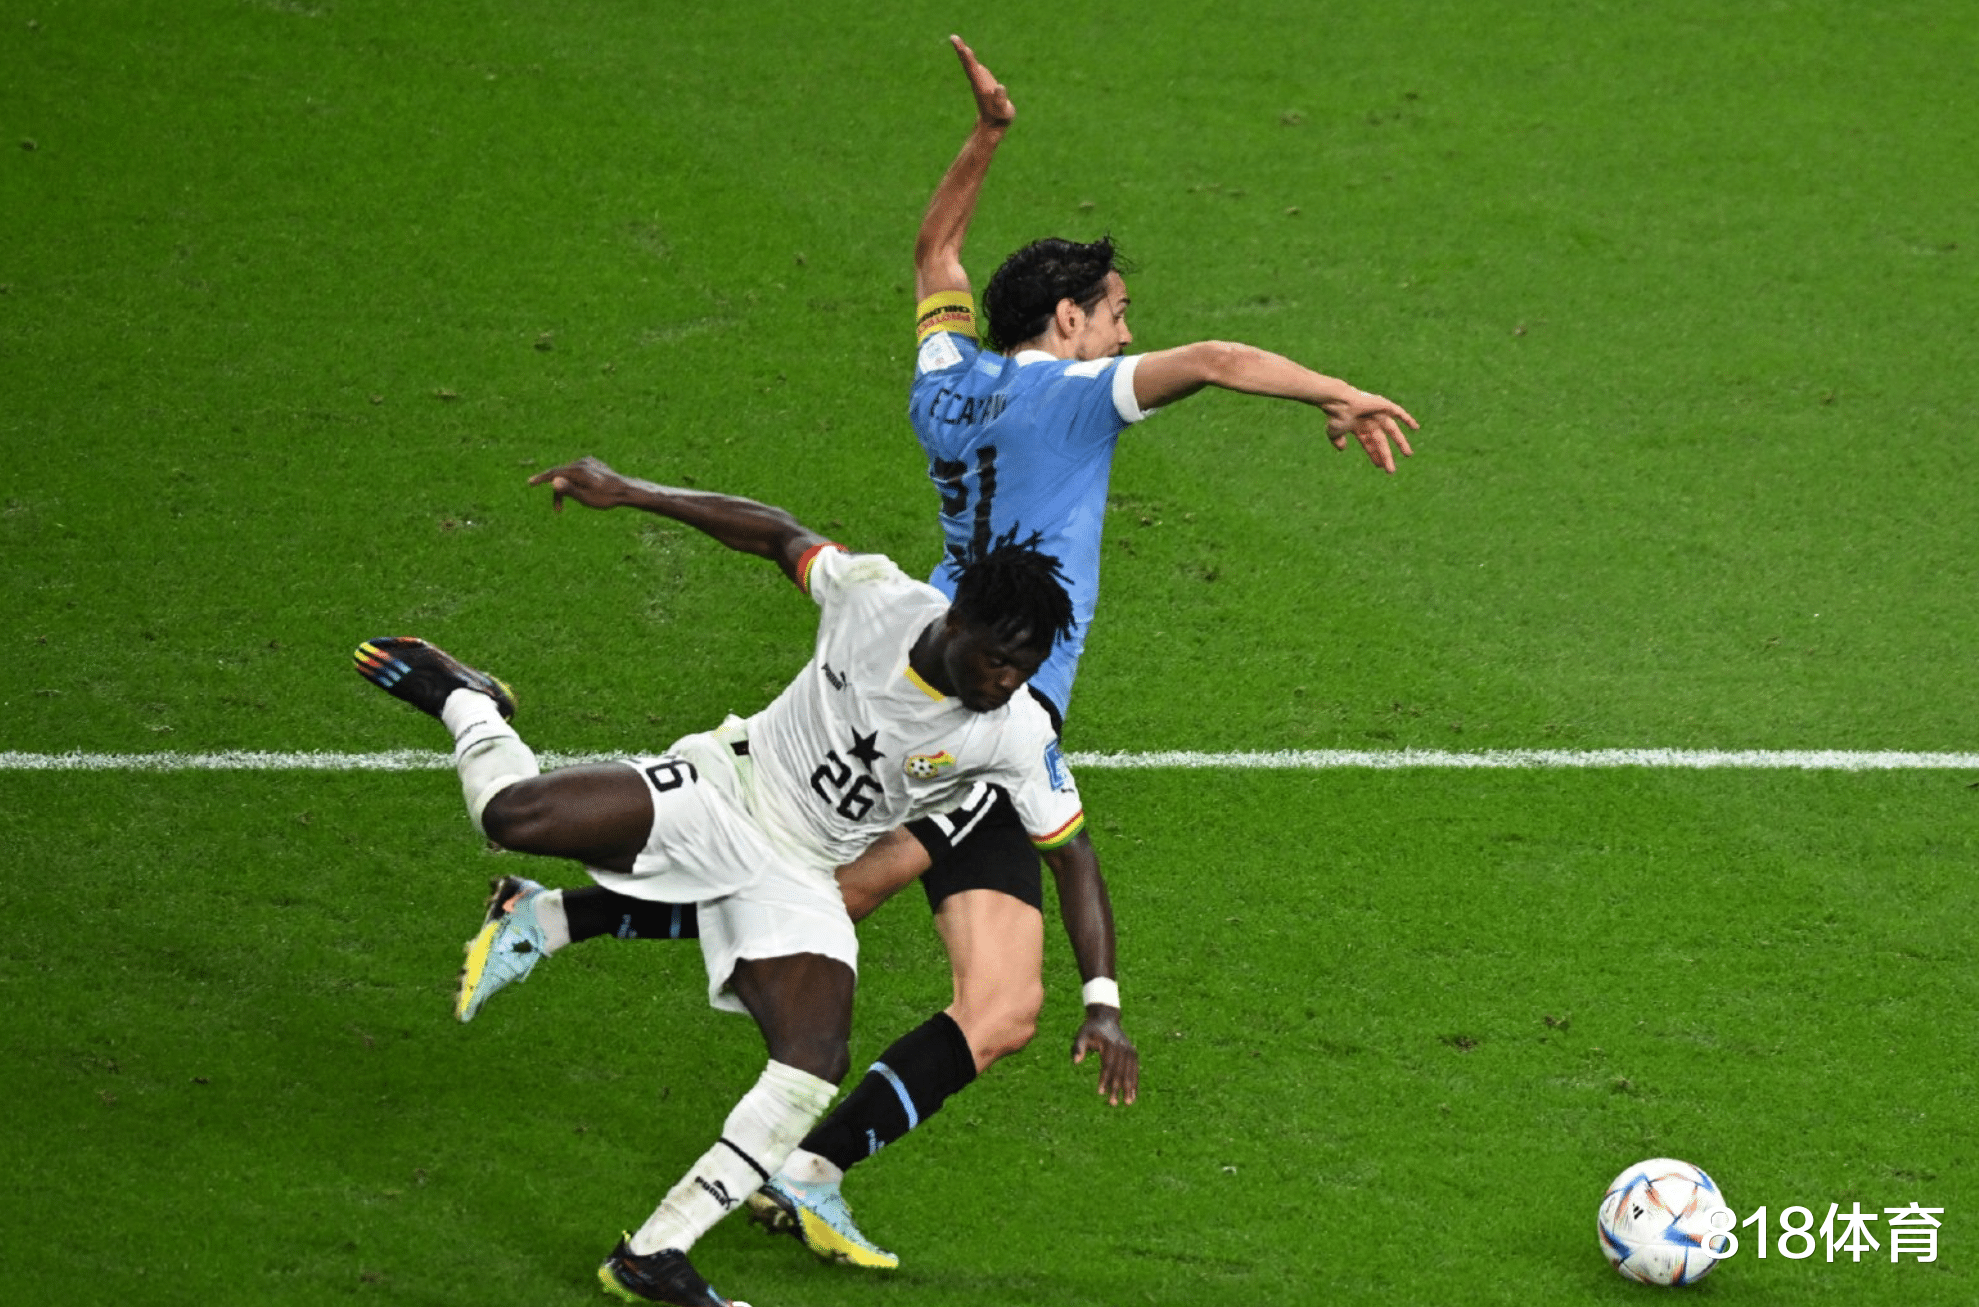 黑哨! 德国裁判补时拒判卡瓦尼出线点球, 乌拉圭队赛后围攻裁判讨说法